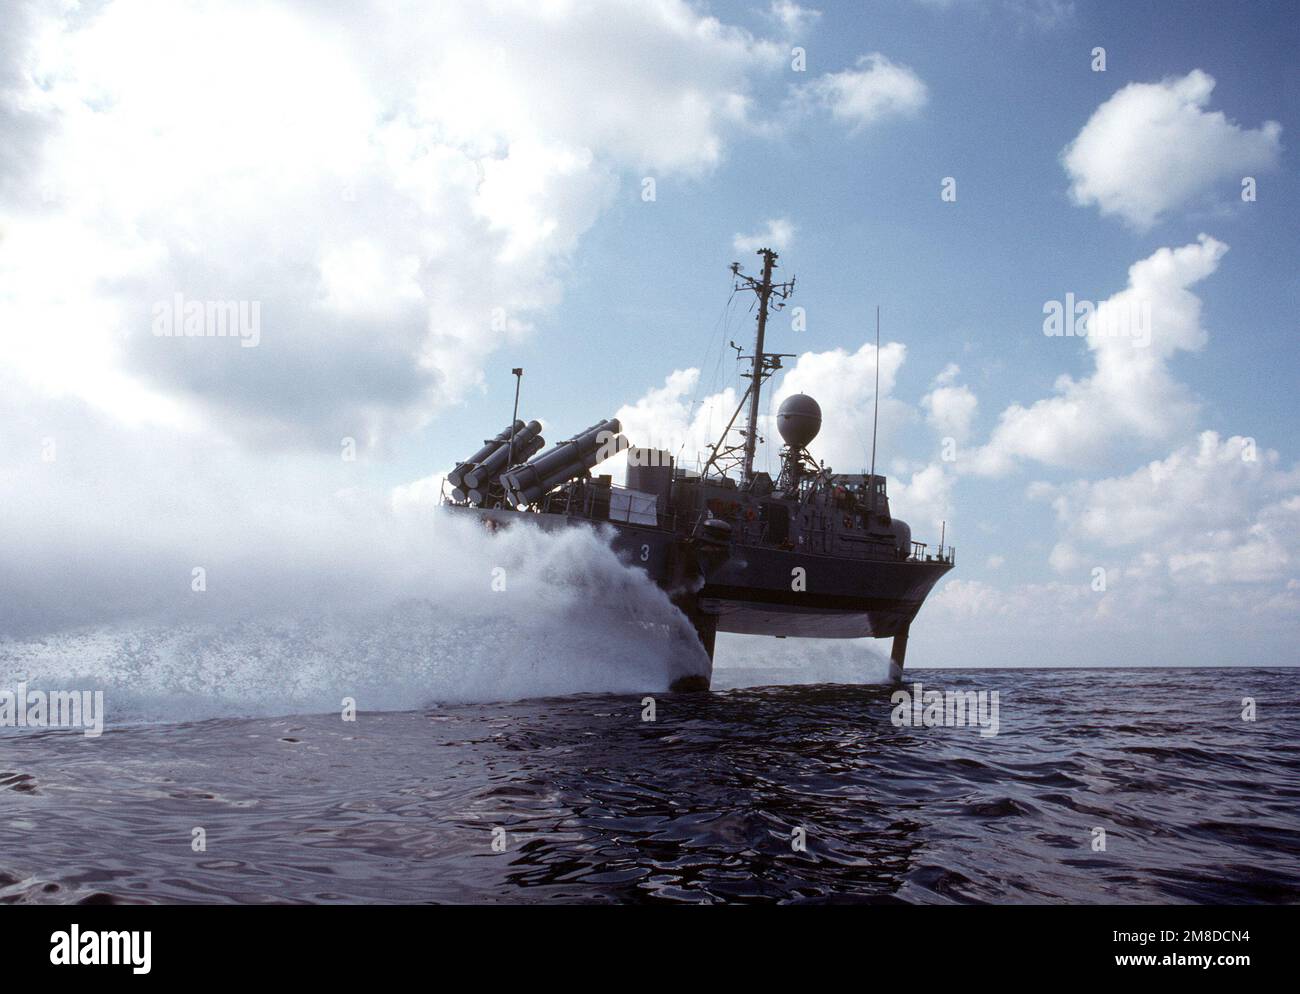 Une vue à tribord du navire de patrouille hydrofoil combattant USS TAURUS (PHM 3), à bord d'une feuille. Les hydroptères de la Marine sont régulièrement utilisés dans les missions d'interdiction des drogues de la Force opérationnelle interarmées 4. Pays : inconnu Banque D'Images